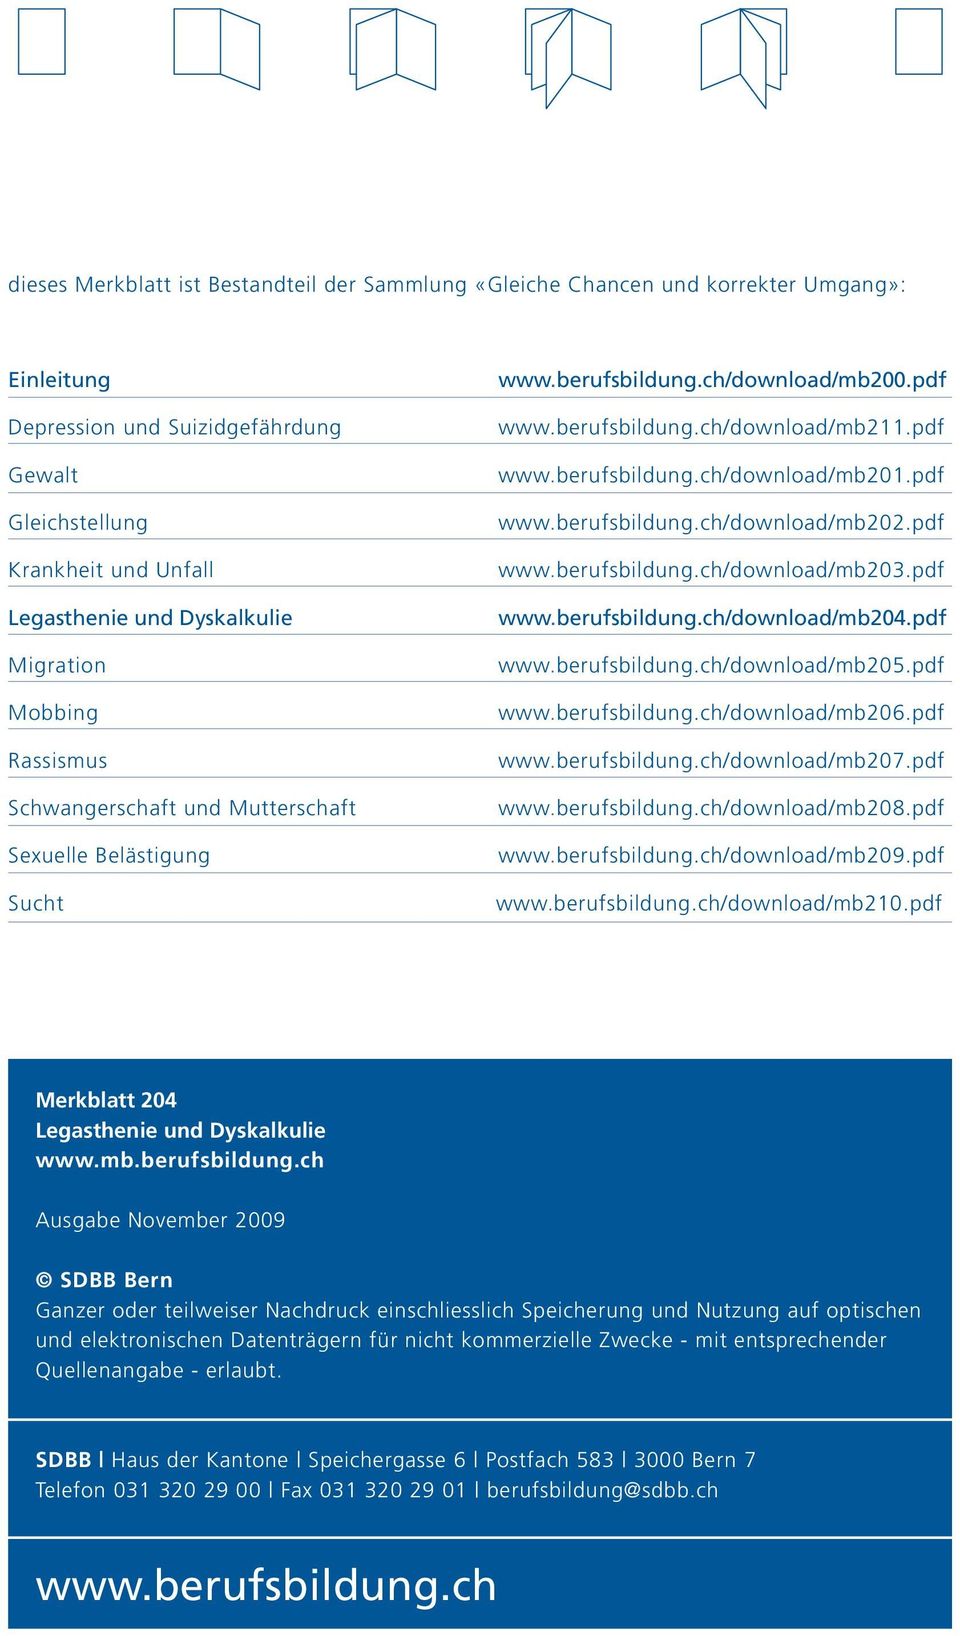 pdf www.berufsbildung.ch/download/mb202.pdf www.berufsbildung.ch/download/mb203.pdf www.berufsbildung.ch/download/mb204.pdf www.berufsbildung.ch/download/mb205.pdf www.berufsbildung.ch/download/mb206.